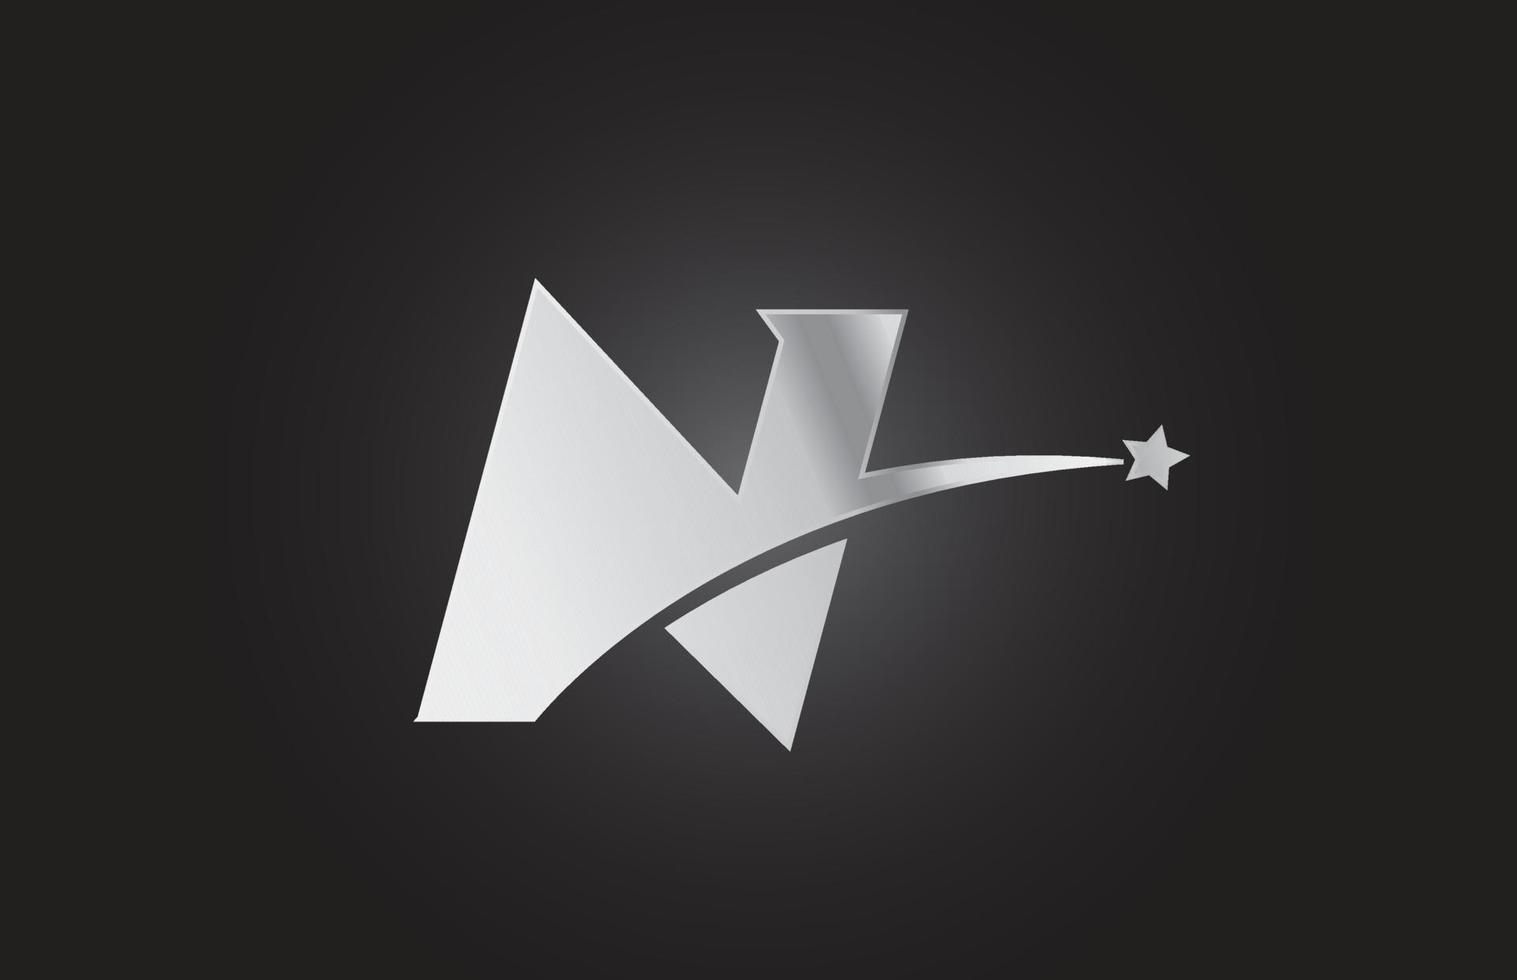 Silbermetall n-Alphabet-Buchstaben-Logo-Symbol mit Stern. kreatives Design für Unternehmen oder Unternehmen vektor